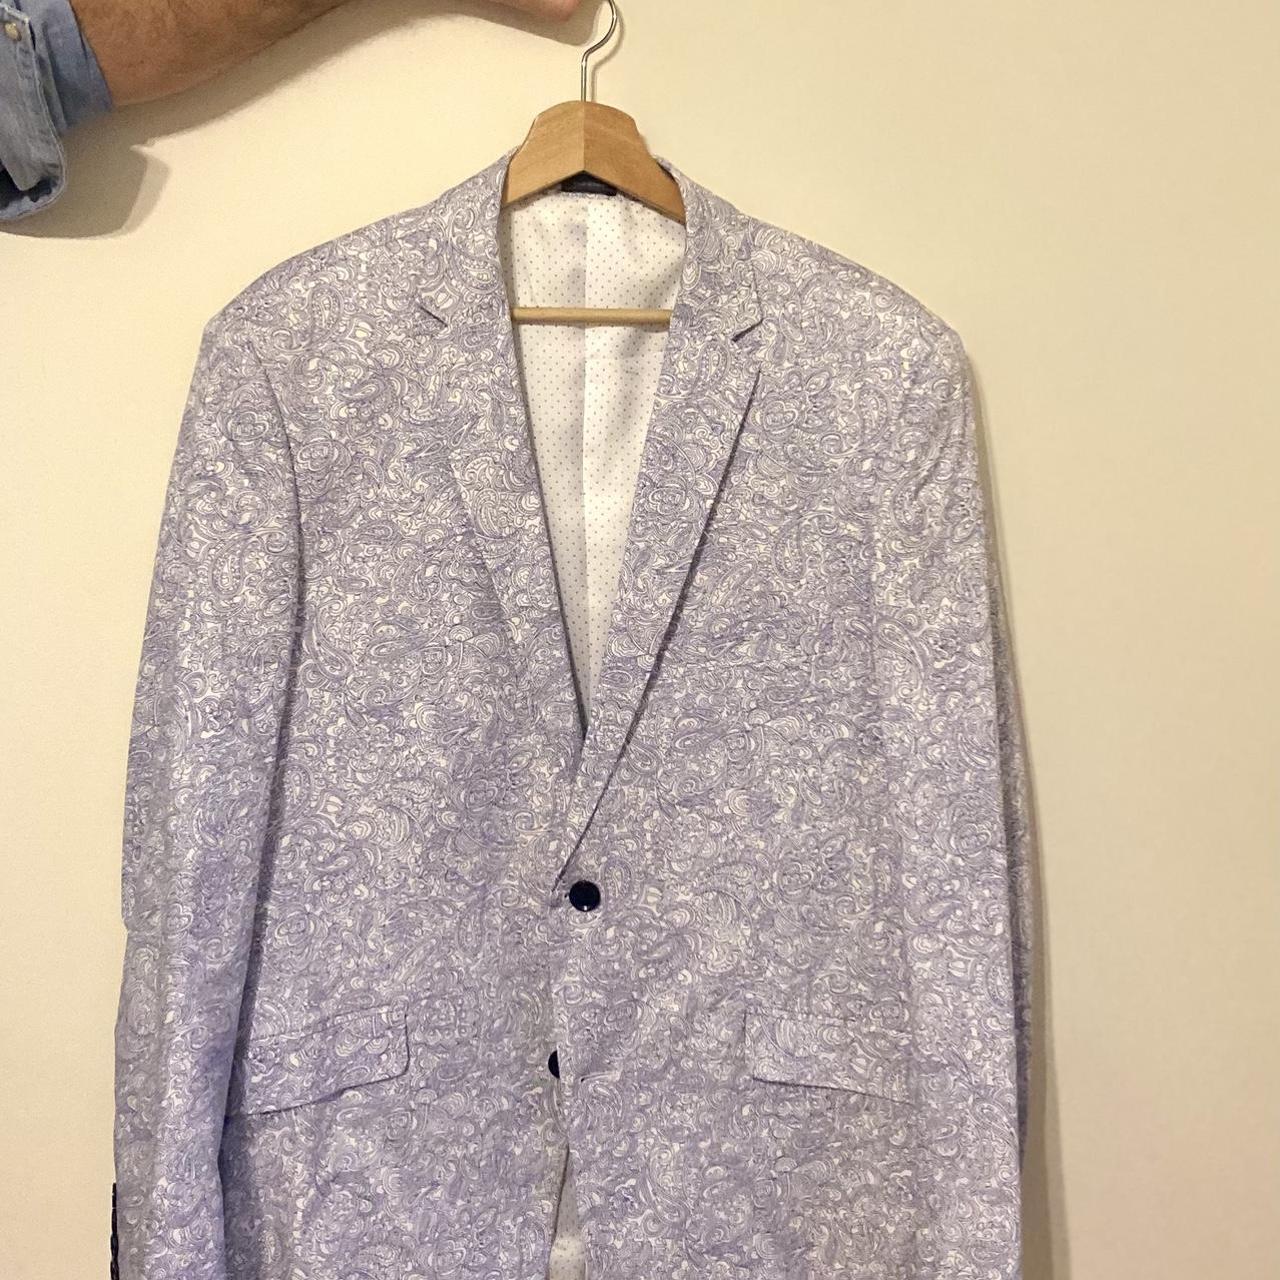 paisley suit jacket, size 42R worn once, no longer... - Depop